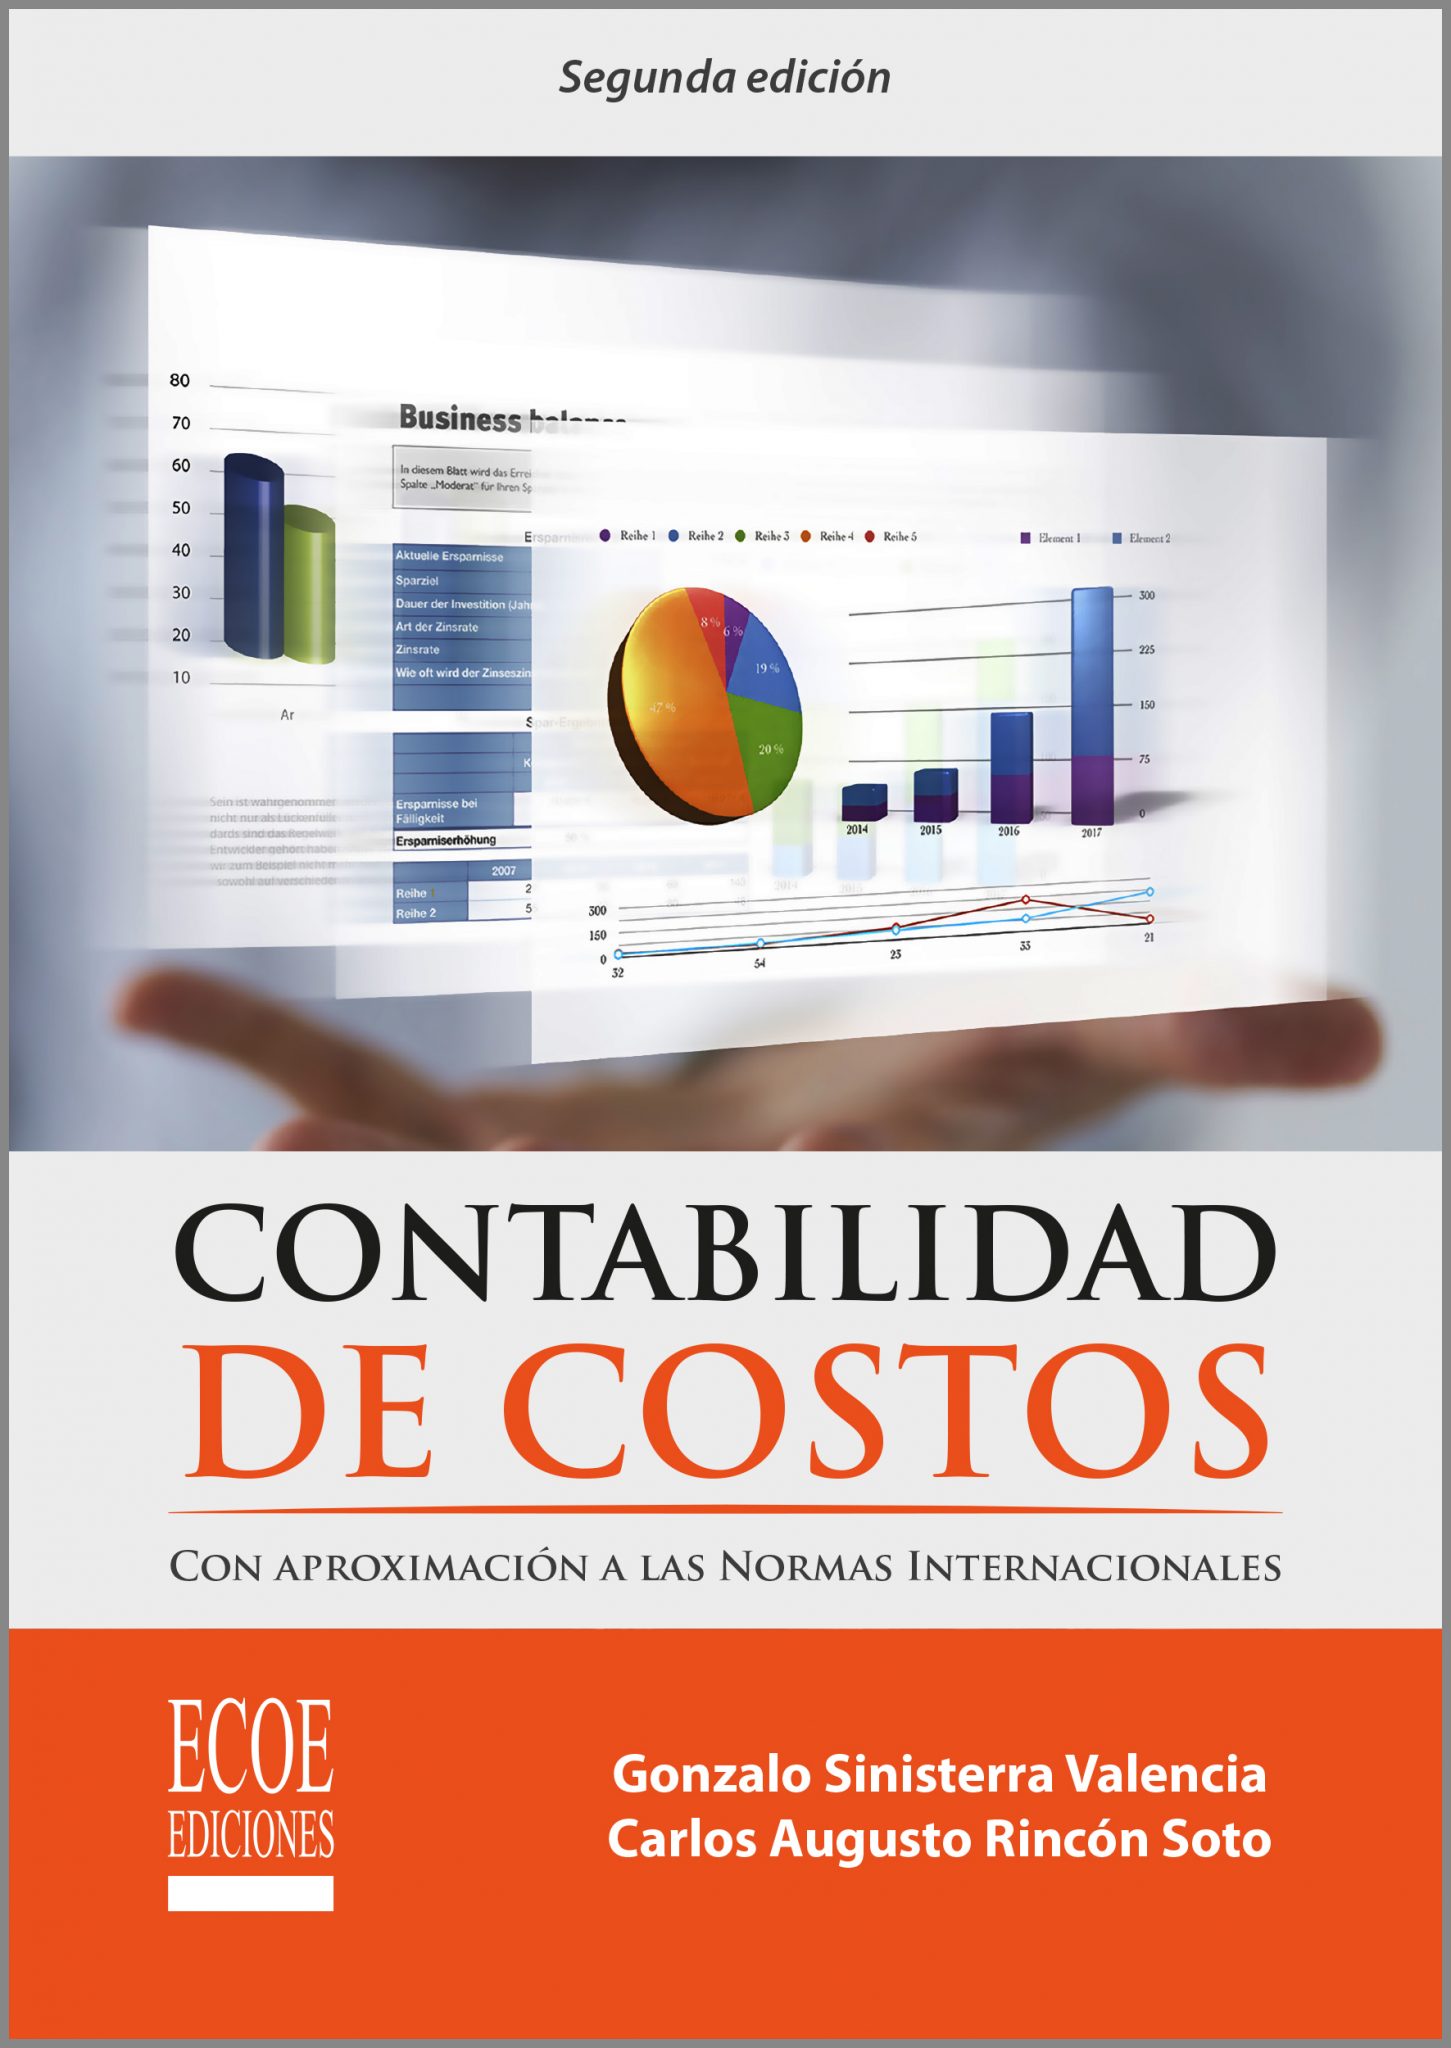 Contabilidad de costos – Ecoe Ediciones